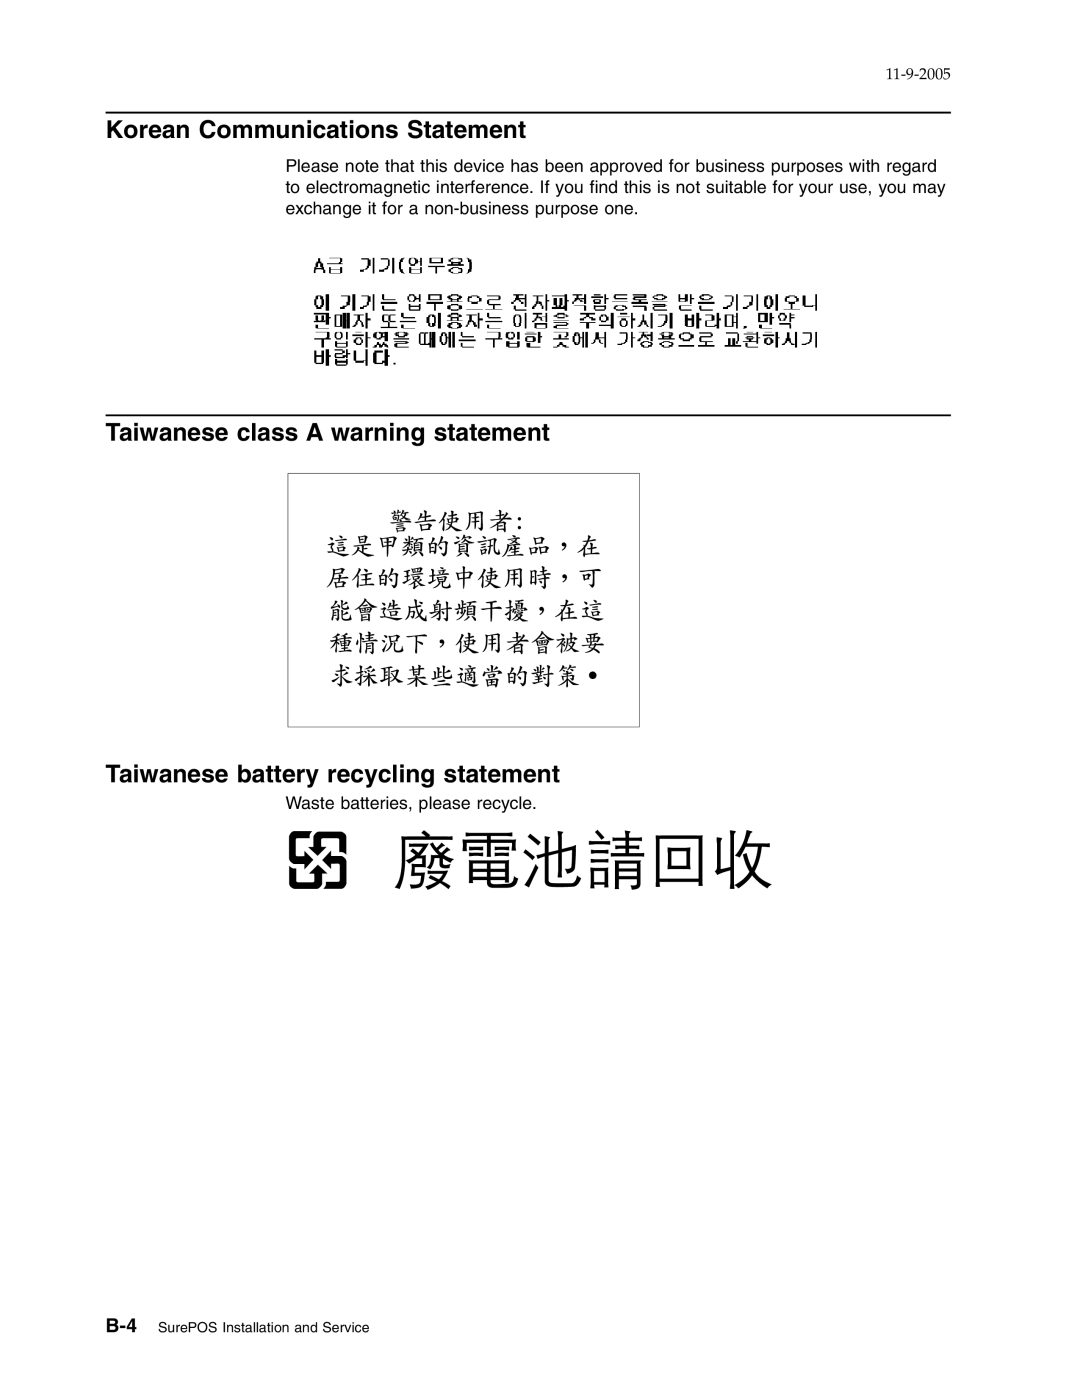 IBM 31x, W2H Korean Communications Statement, Taiwanese class A warning statement, Taiwanese battery recycling statement 